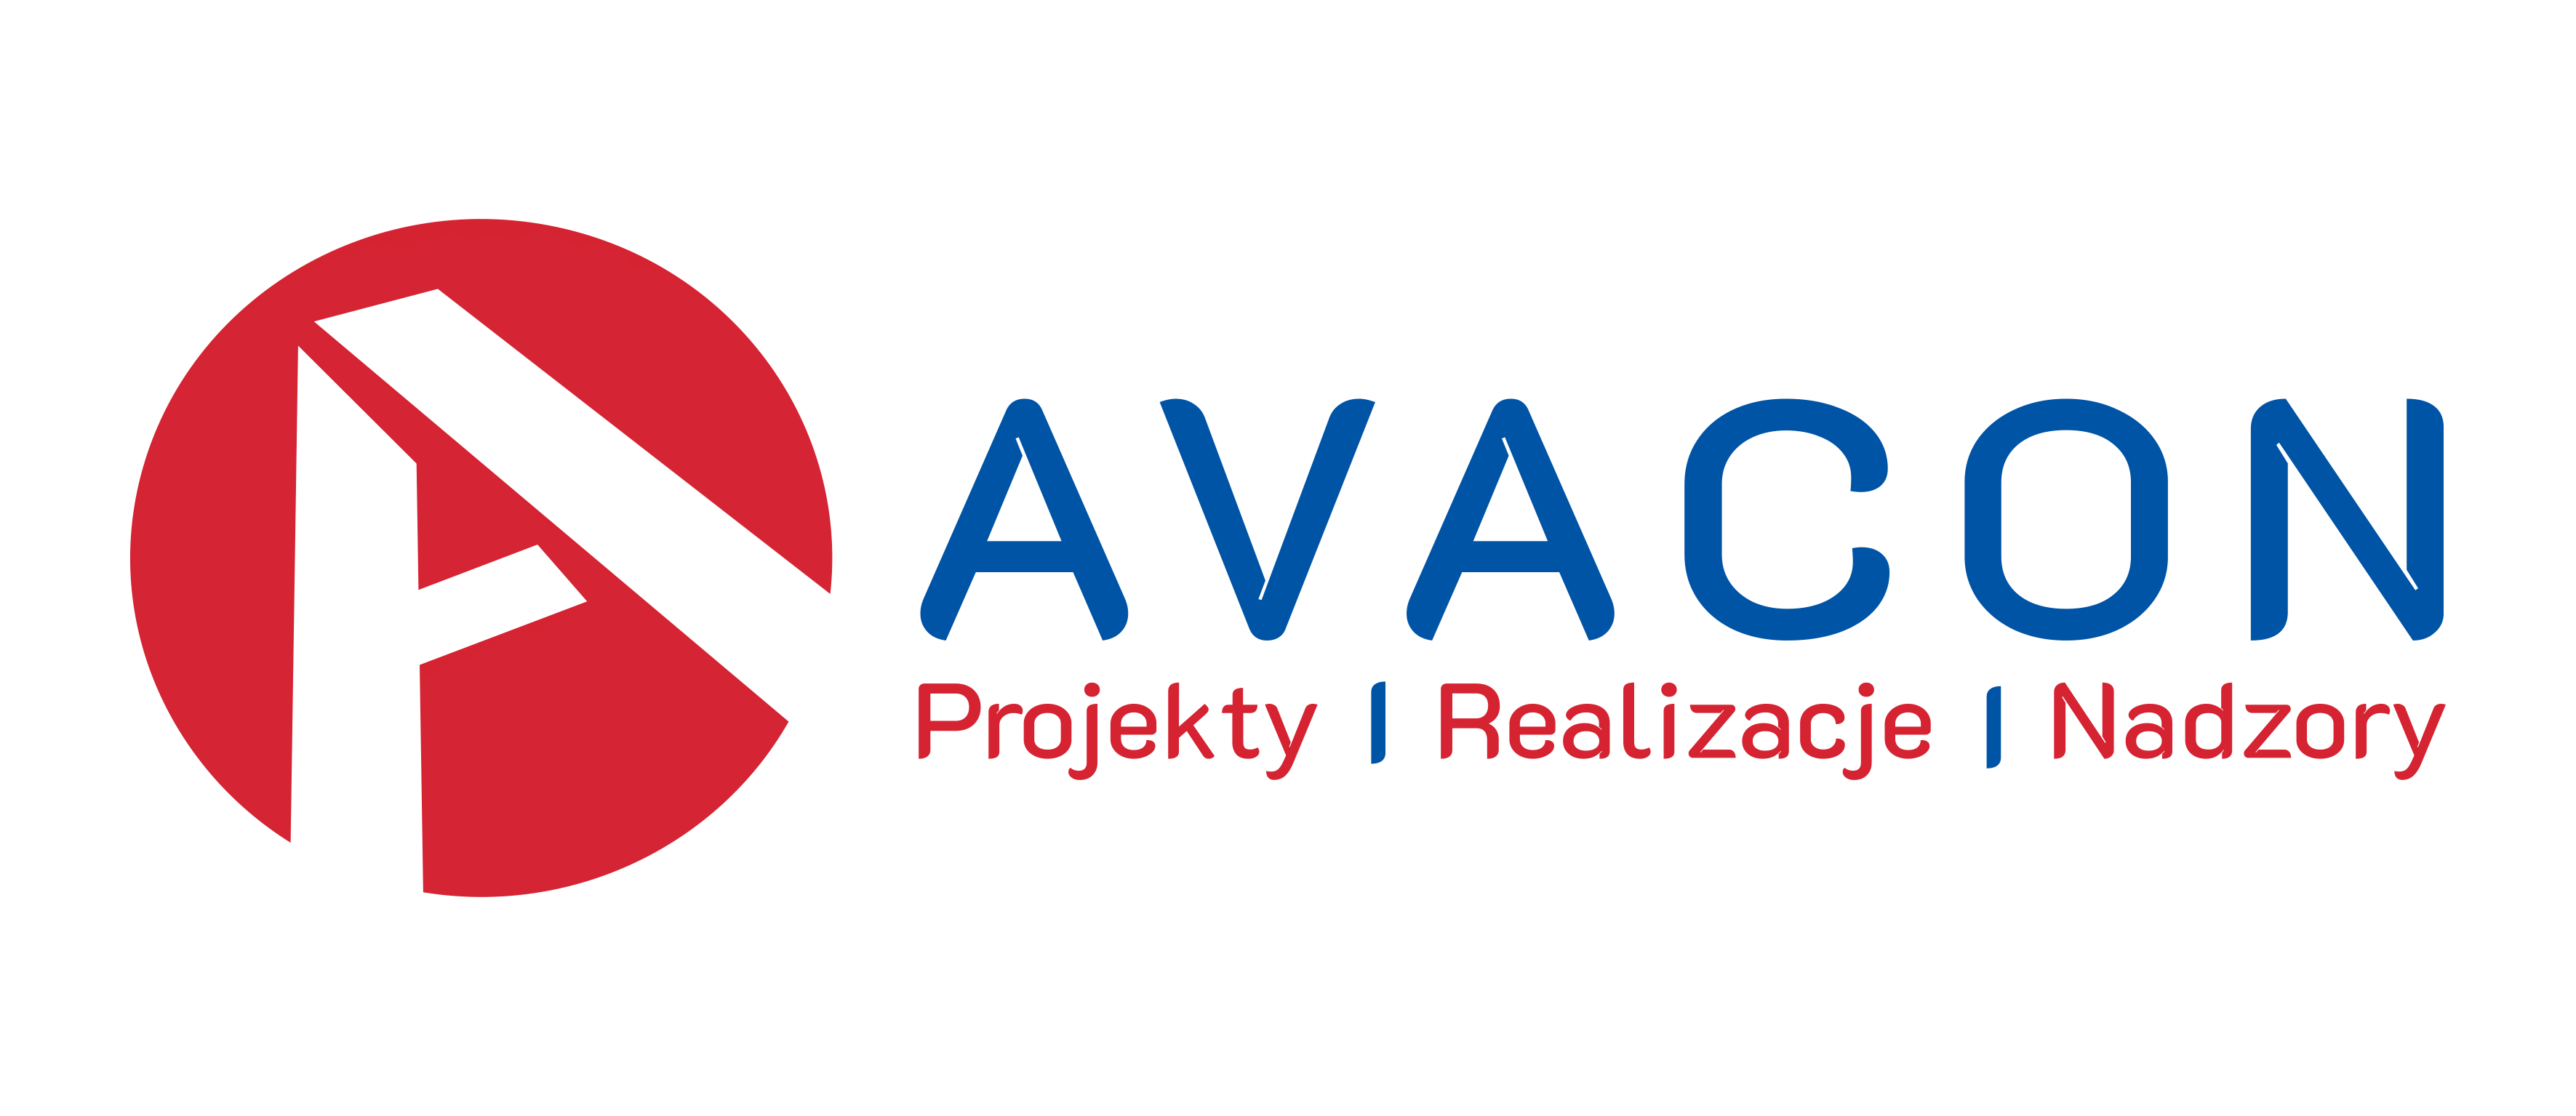 Projekt instalacji pomp ciepła Avacon Kraków